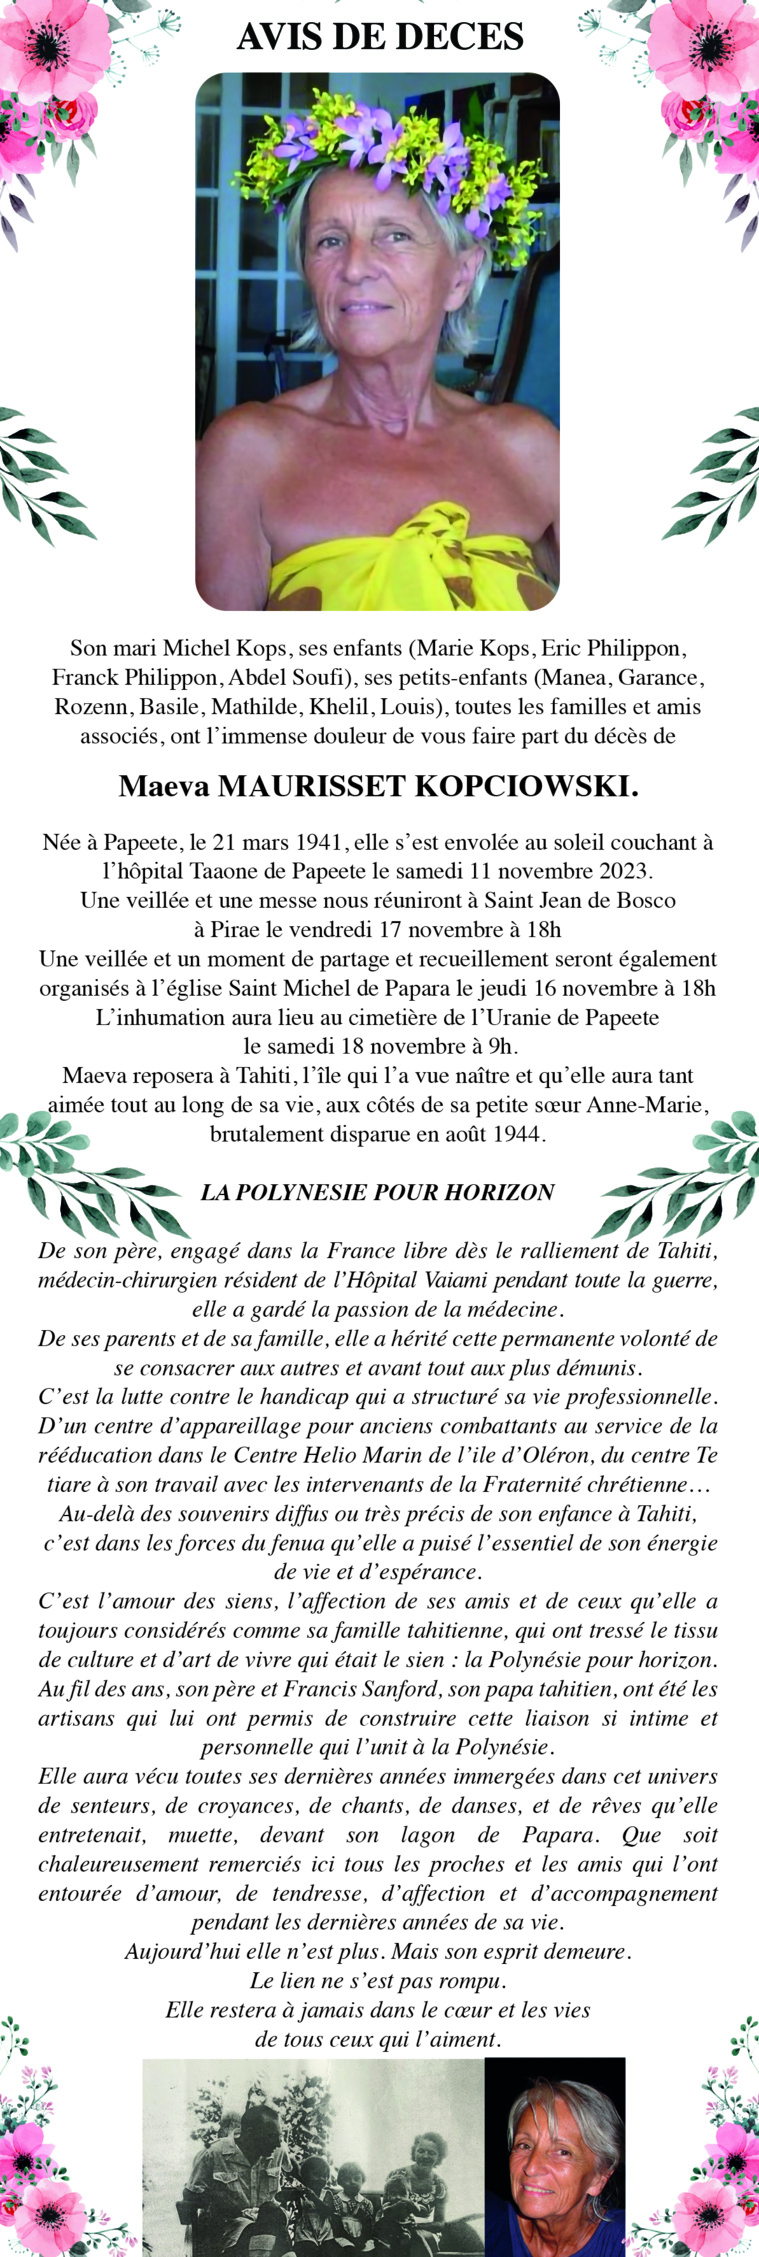 Avis de décés de la famille MAURISSET KOPCIOWSKI pour la défunte Maeva MAURISSET KOPCIOWSKI